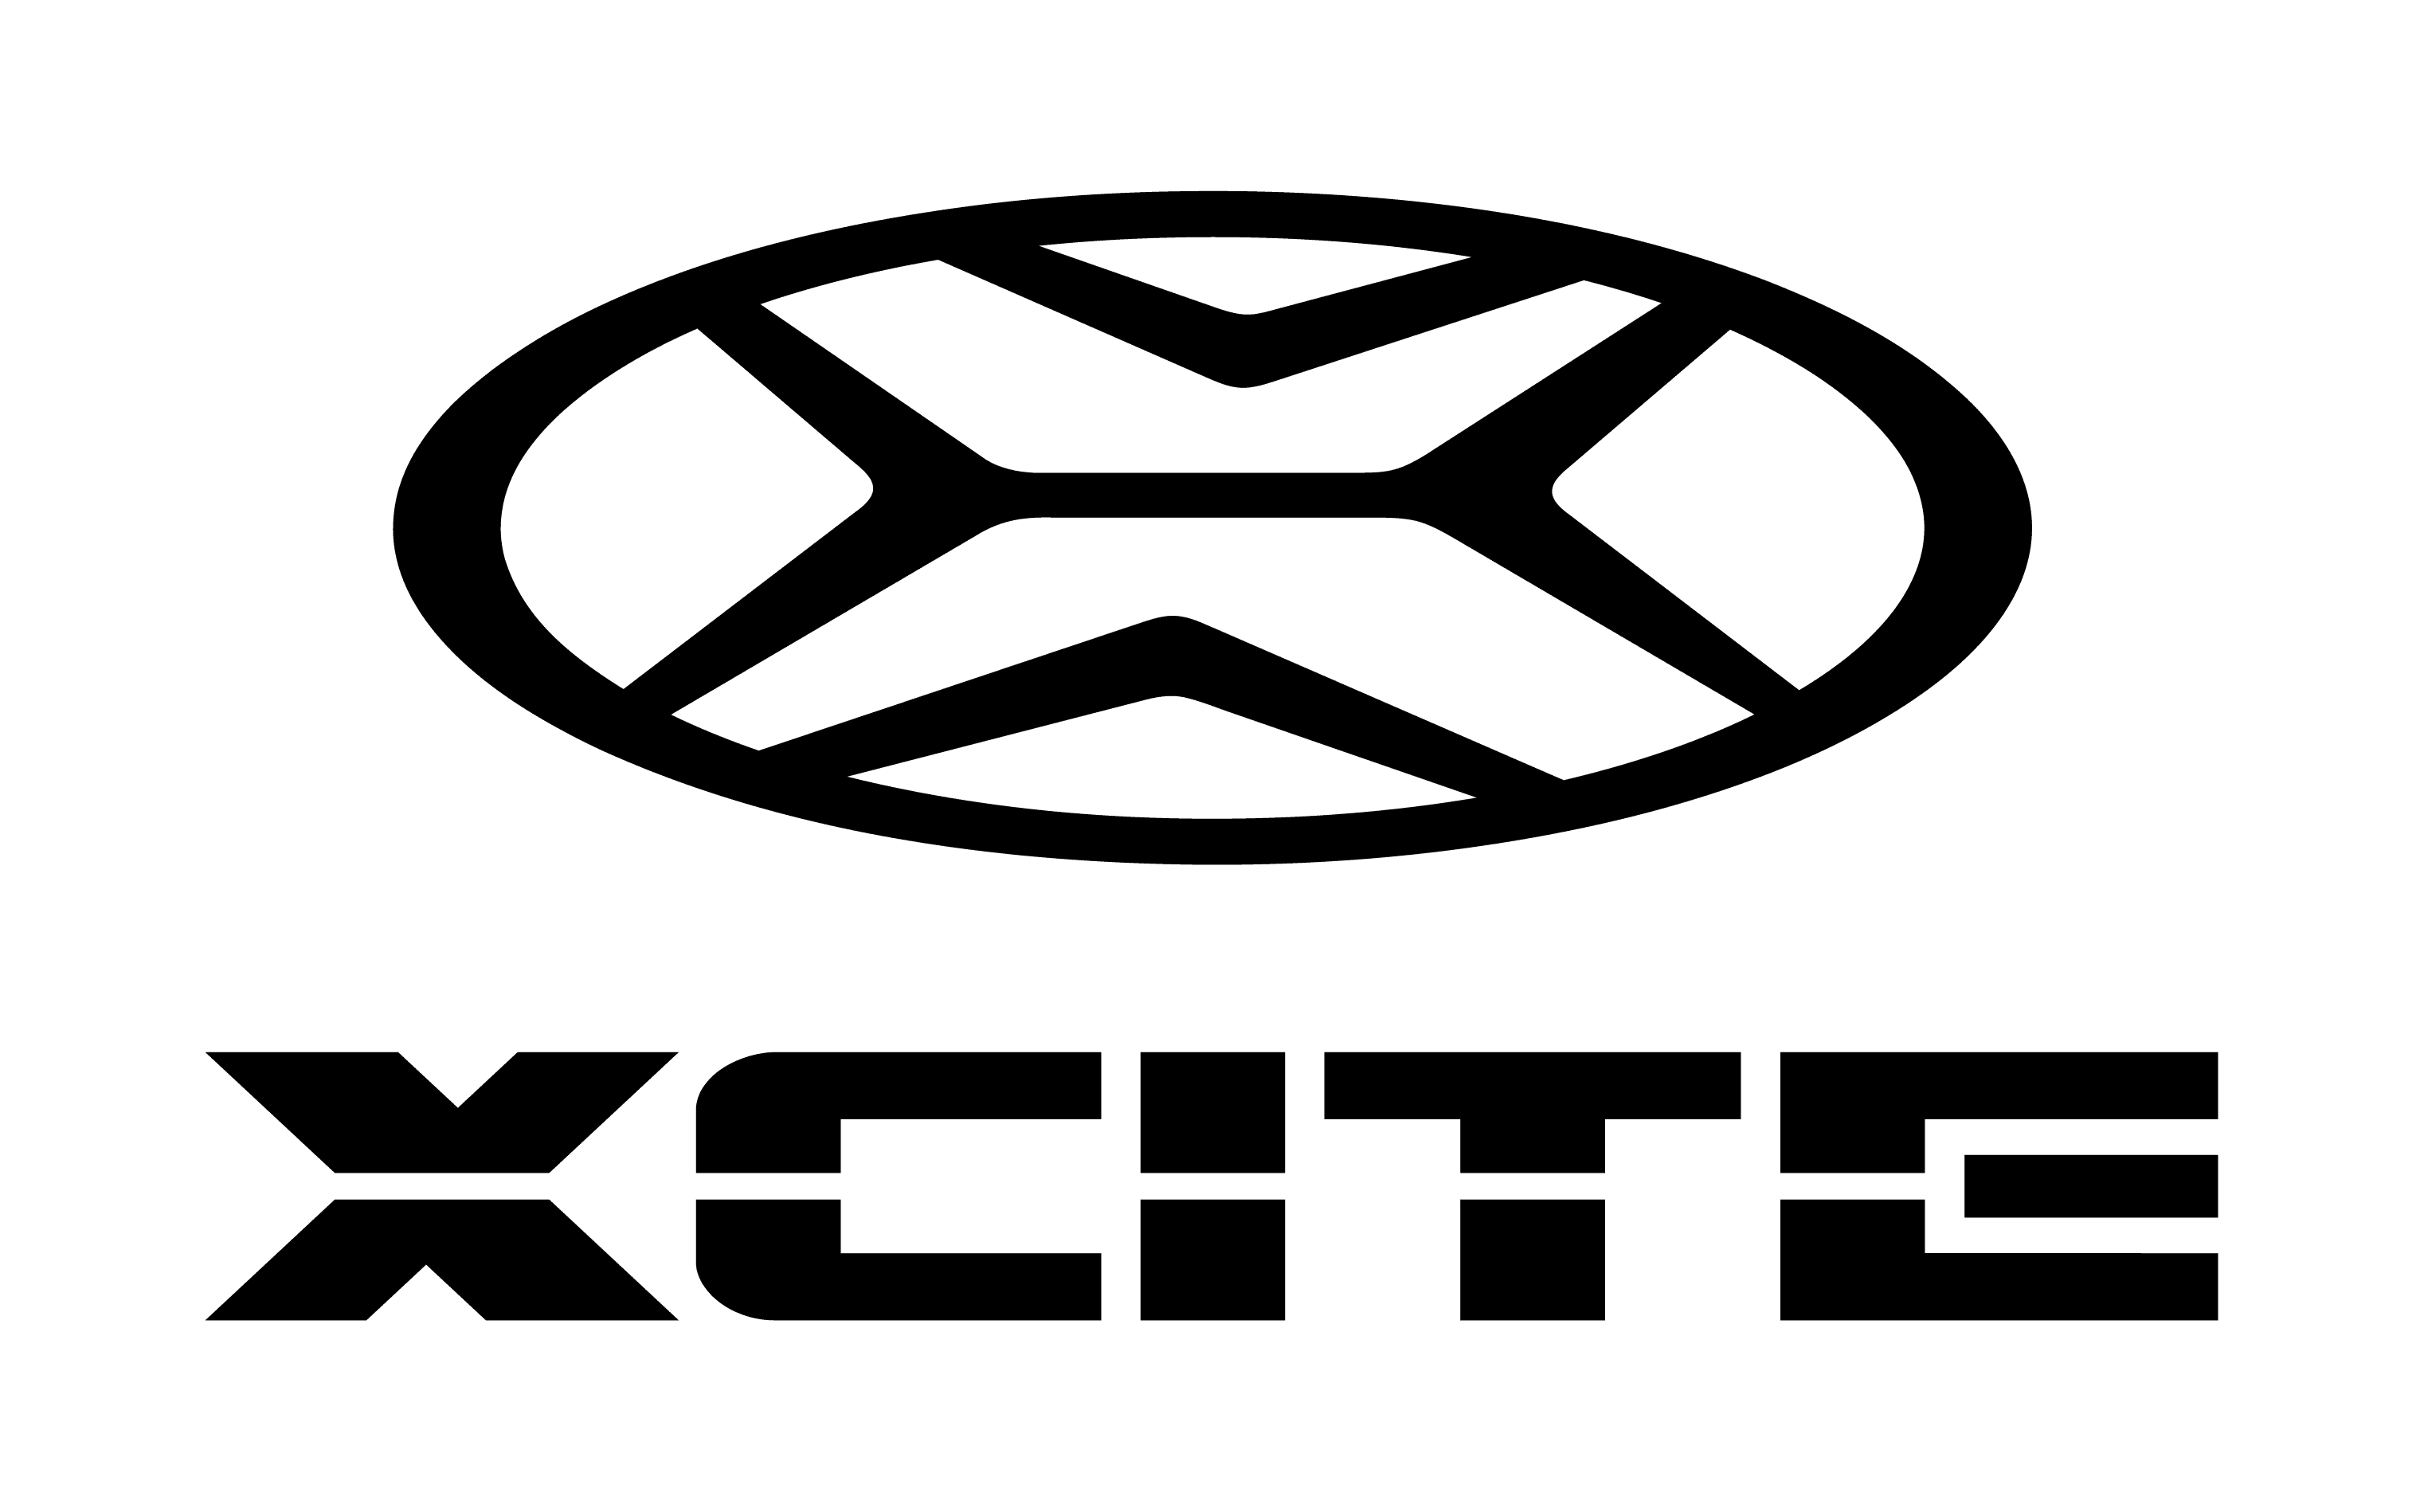 В Санкт-Петербурге начался выпуск кроссоверов под маркой Xcite